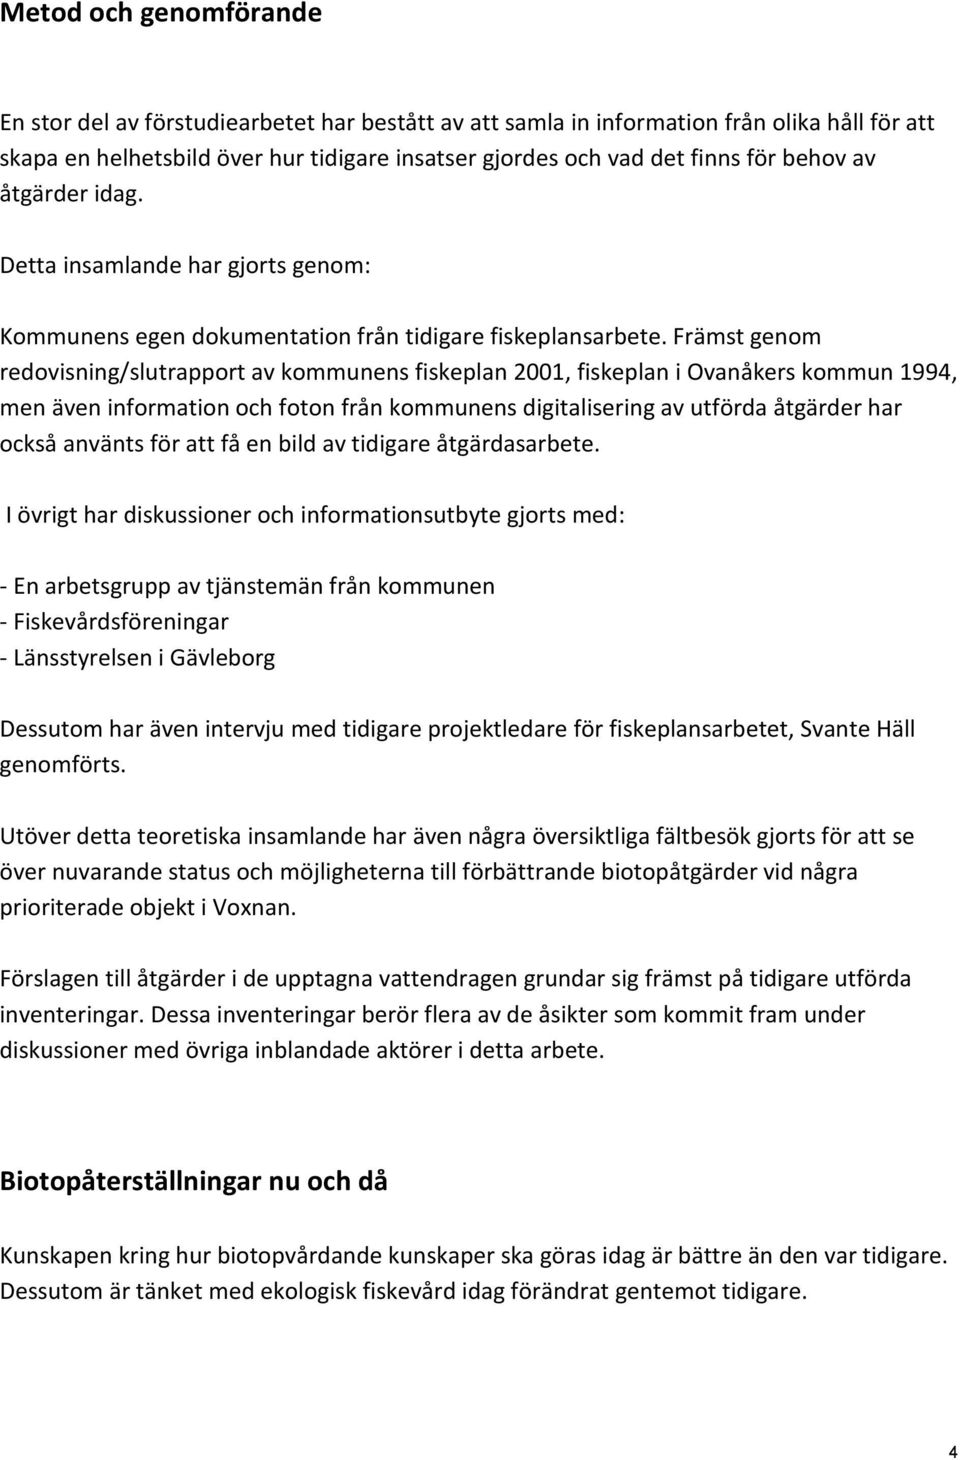 Främst genom redovisning/slutrapport av kommunens fiskeplan 2001, fiskeplan i Ovanåkers kommun 1994, men även information och foton från kommunens digitalisering av utförda åtgärder har också använts